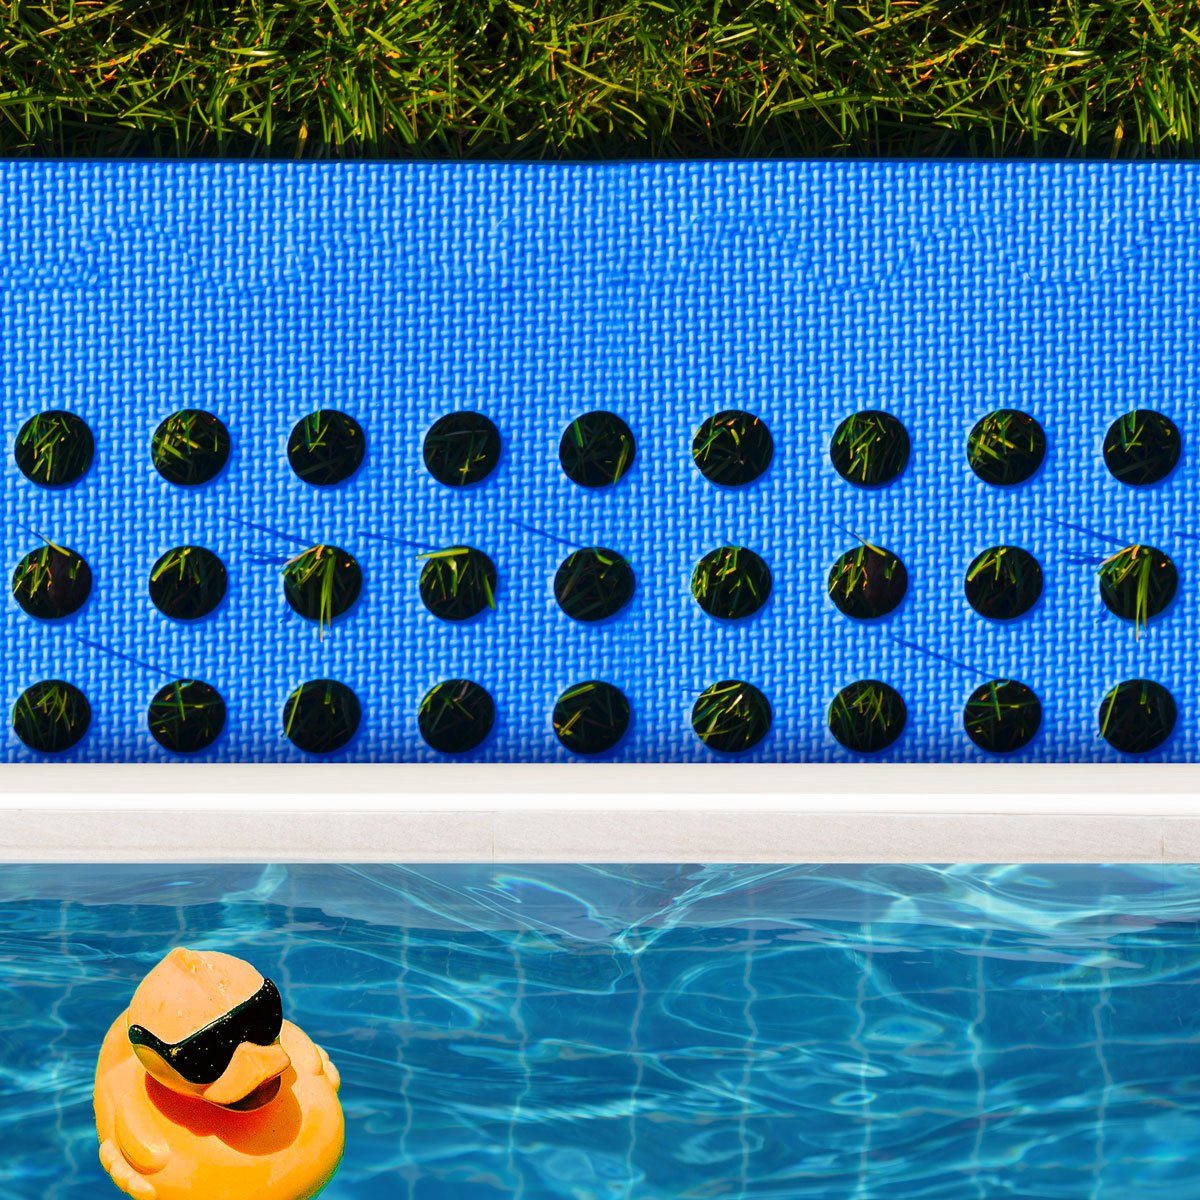 eyepower Bodenmatte 11,2 m² Poolunterlage 62x62 Stecksystem Matten 32 Set, Blau rutschfest EVA